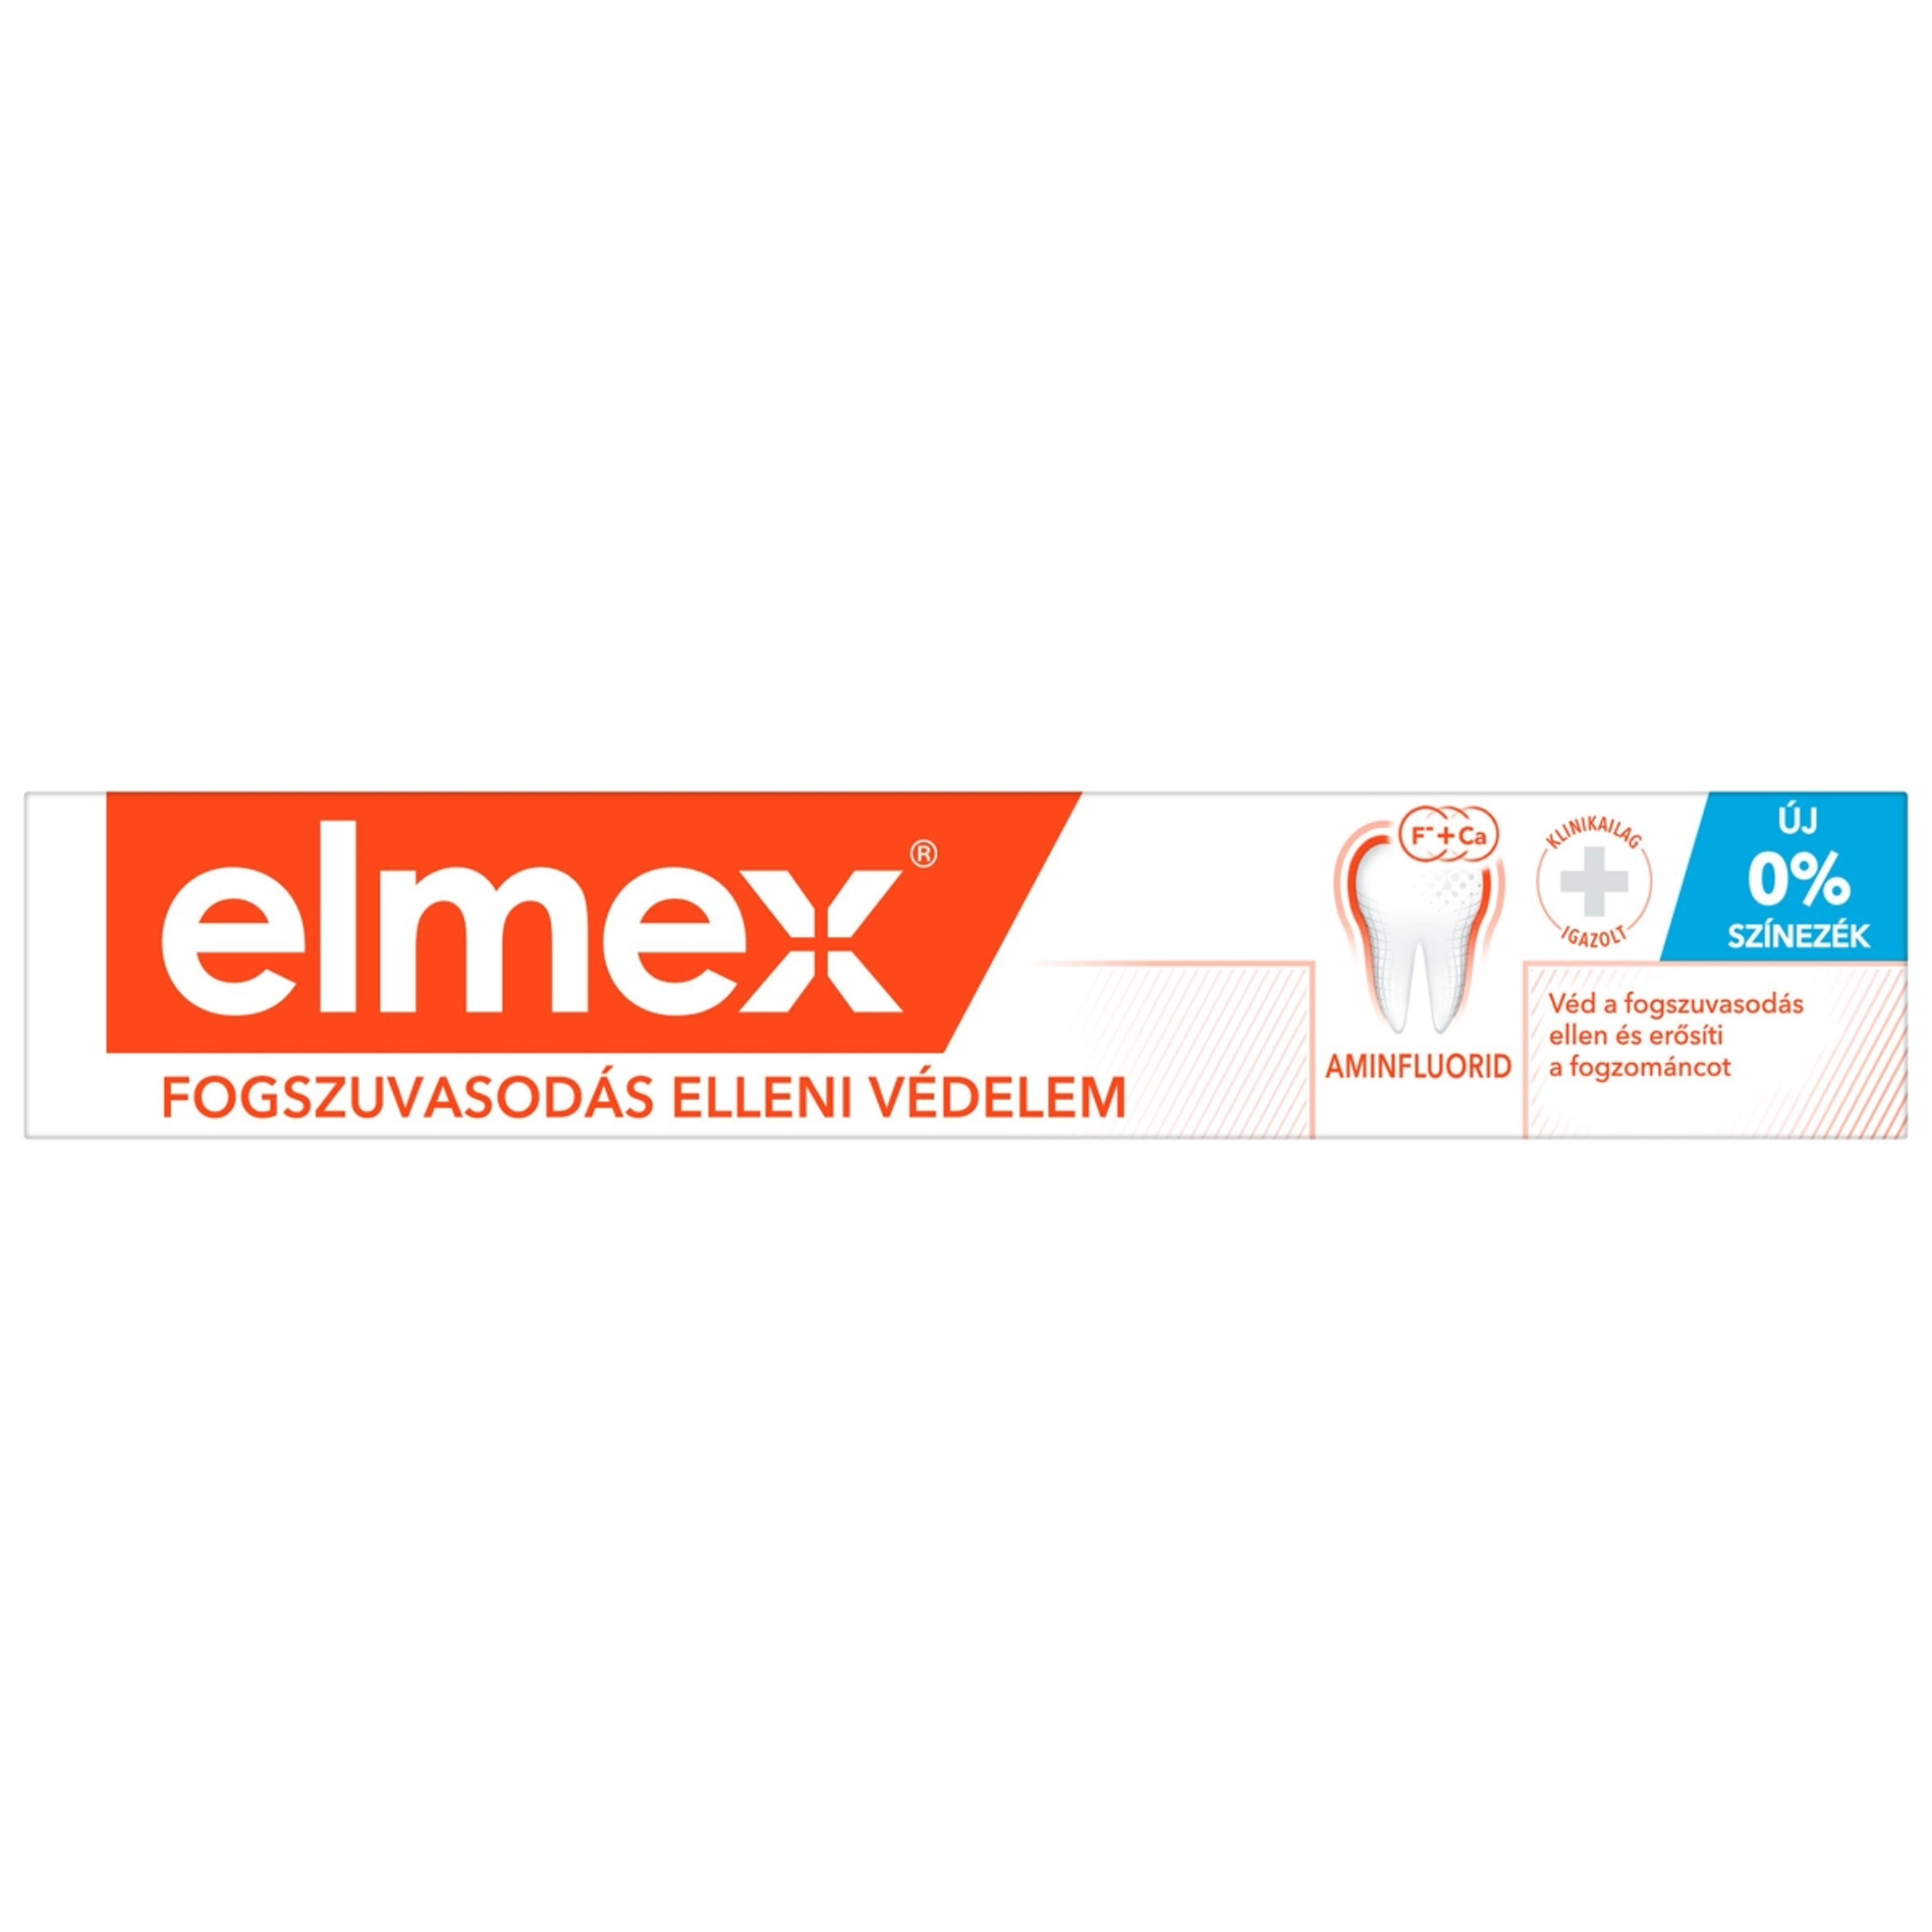 Elmex Caries Protection fogszuvasodás elleni fogkrém aminfluoriddal - 75 ml-1